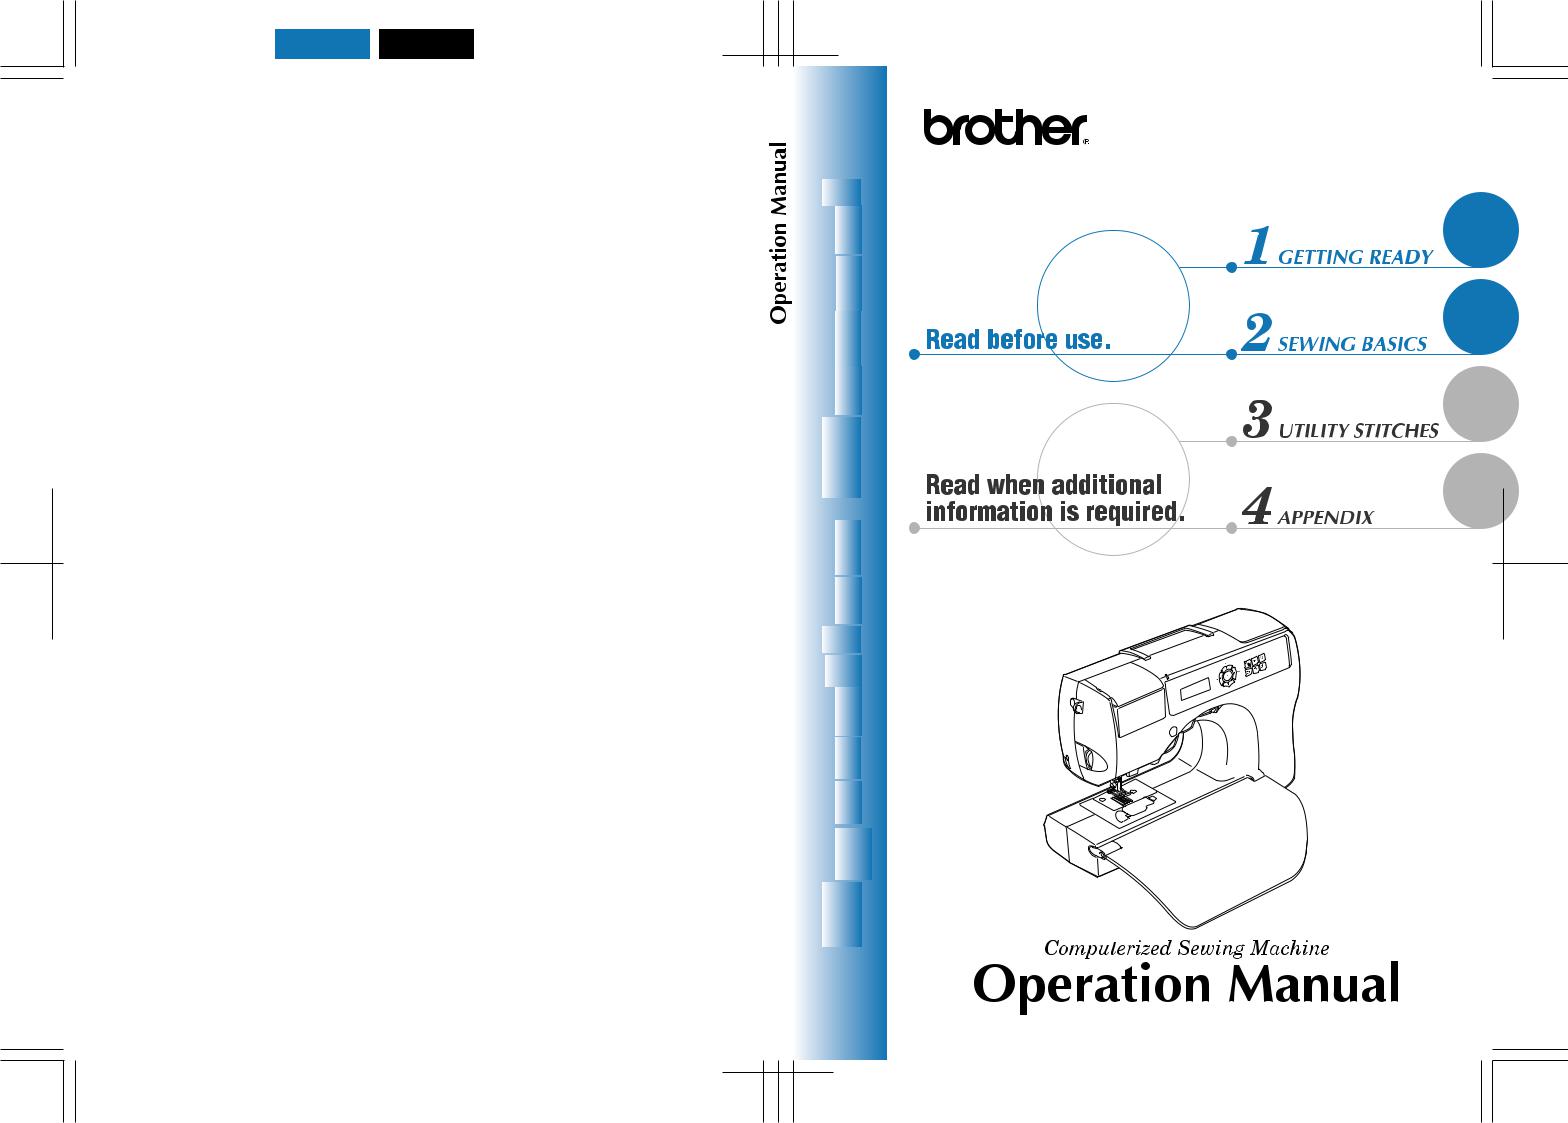 Brother CS-8120, CS-8130 Operation Manual